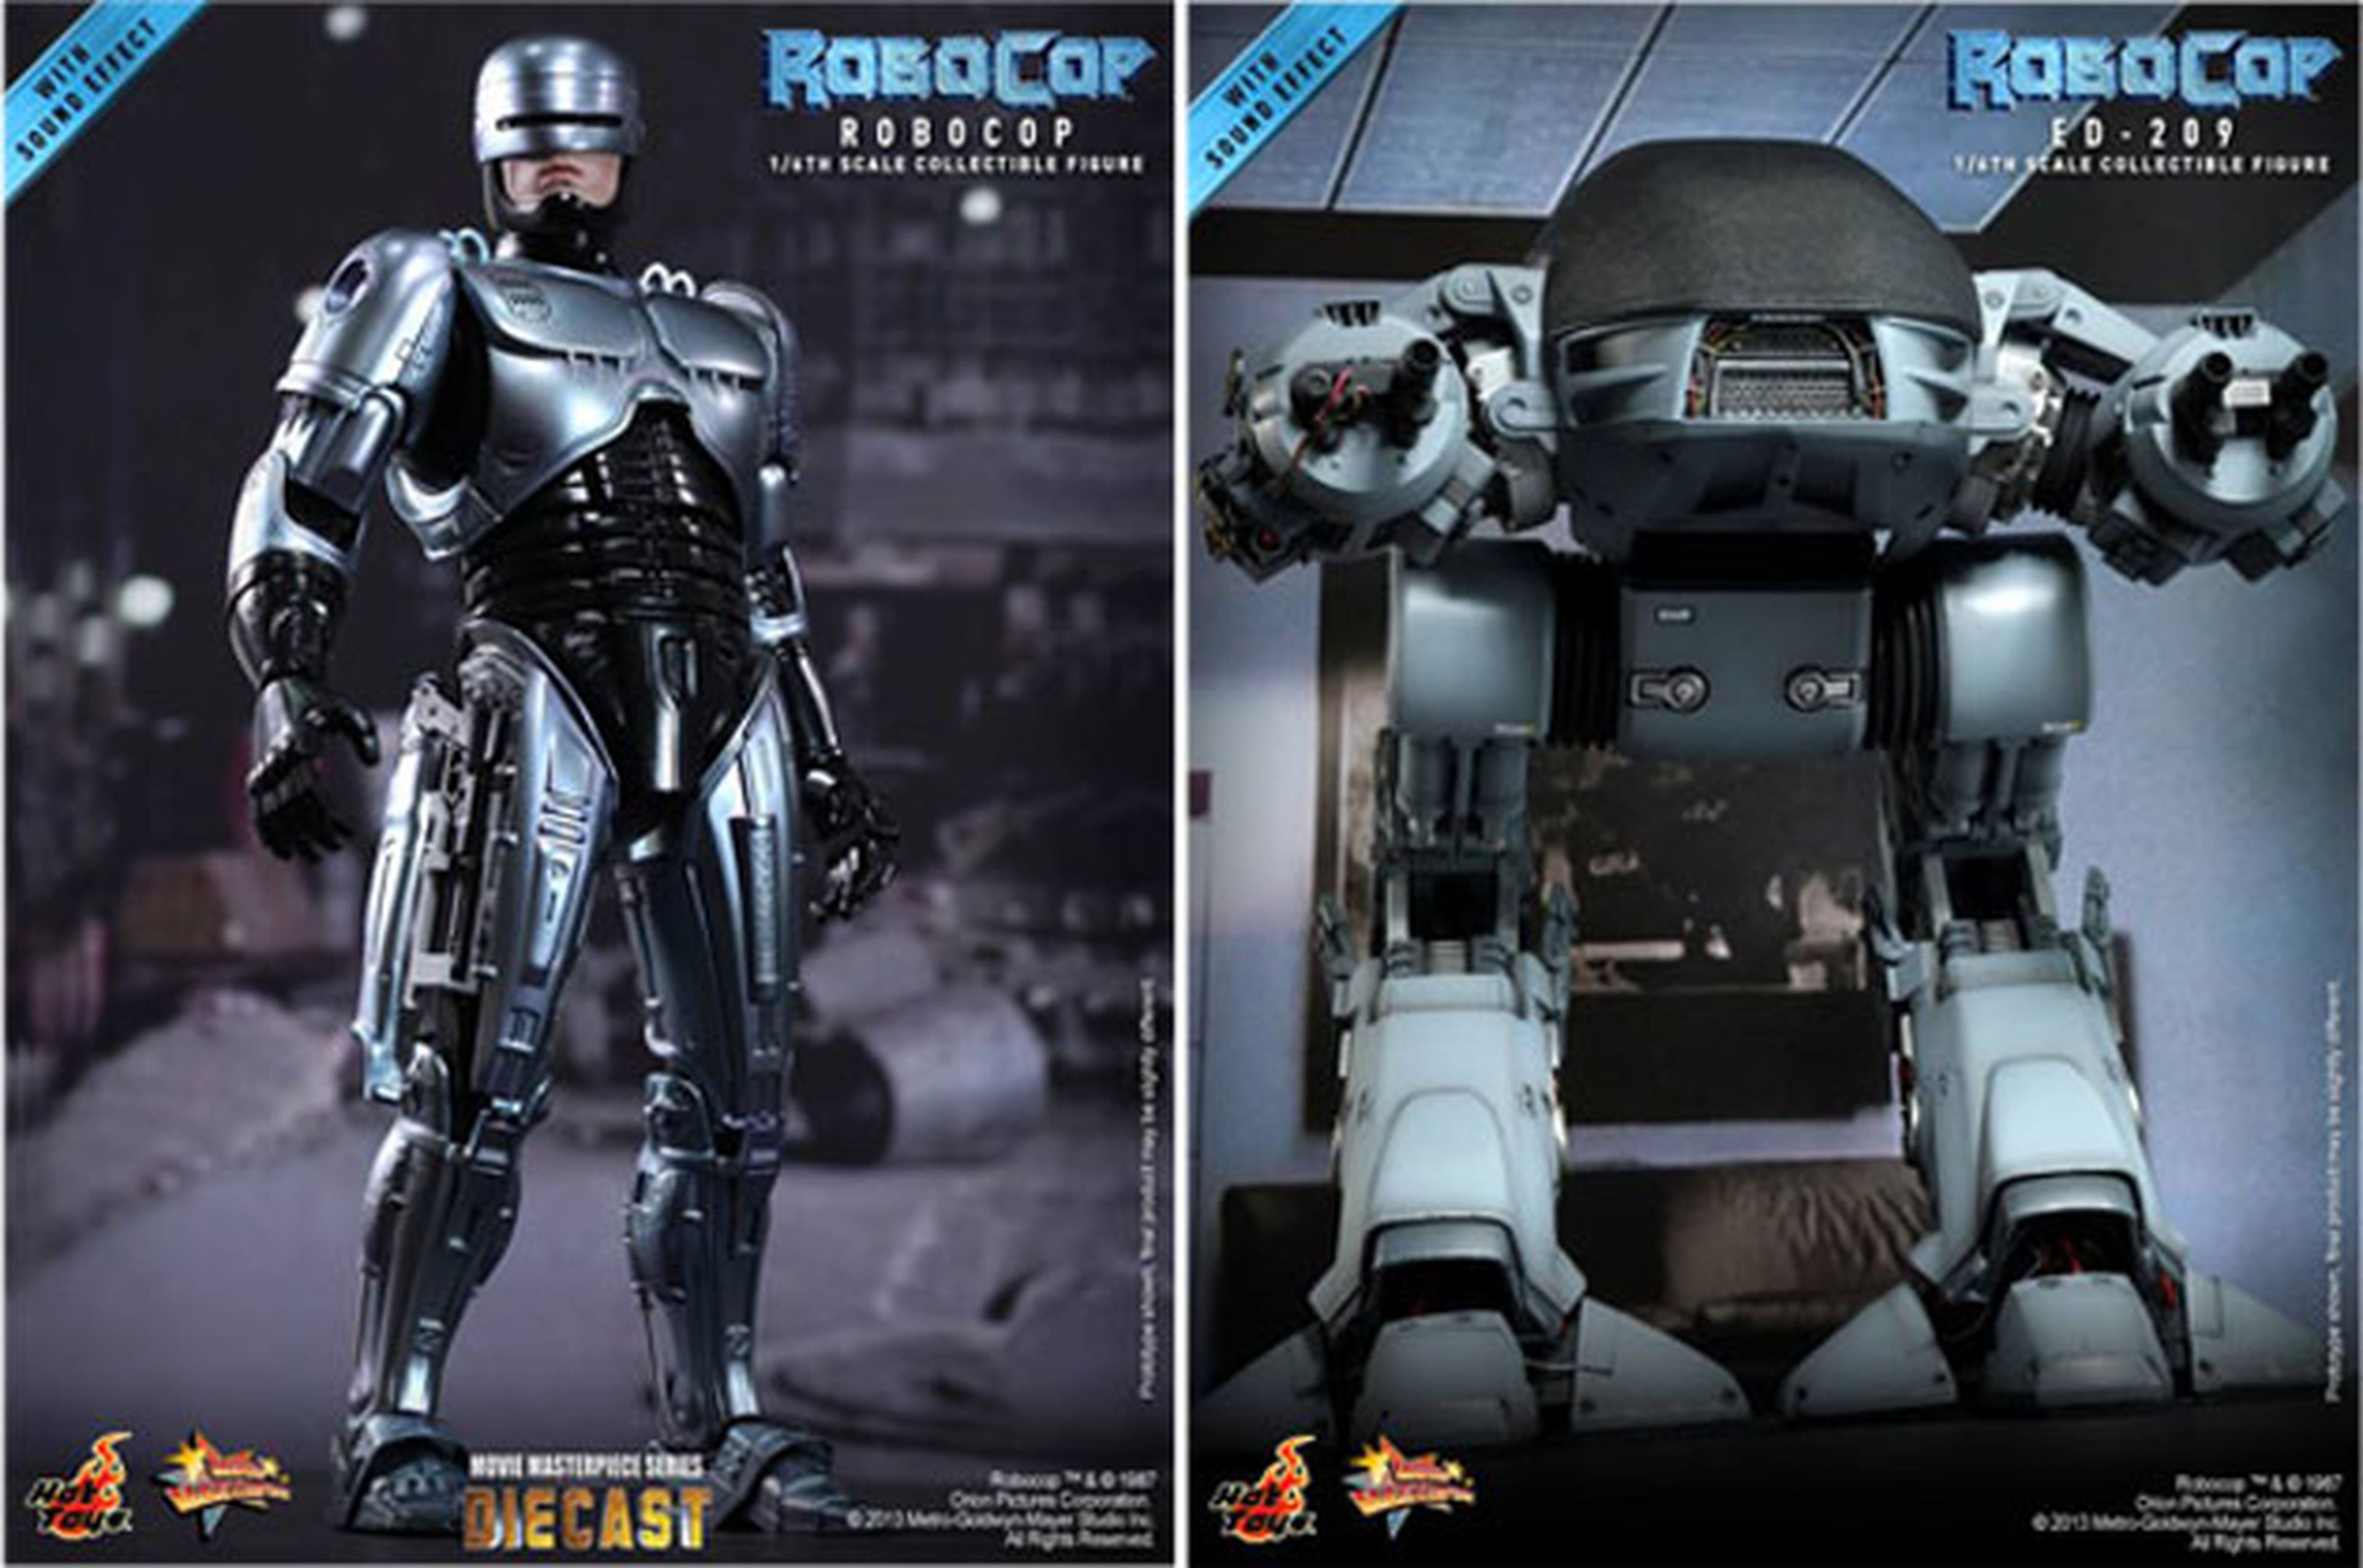 Hot Toys relanza las figuras de Robocop